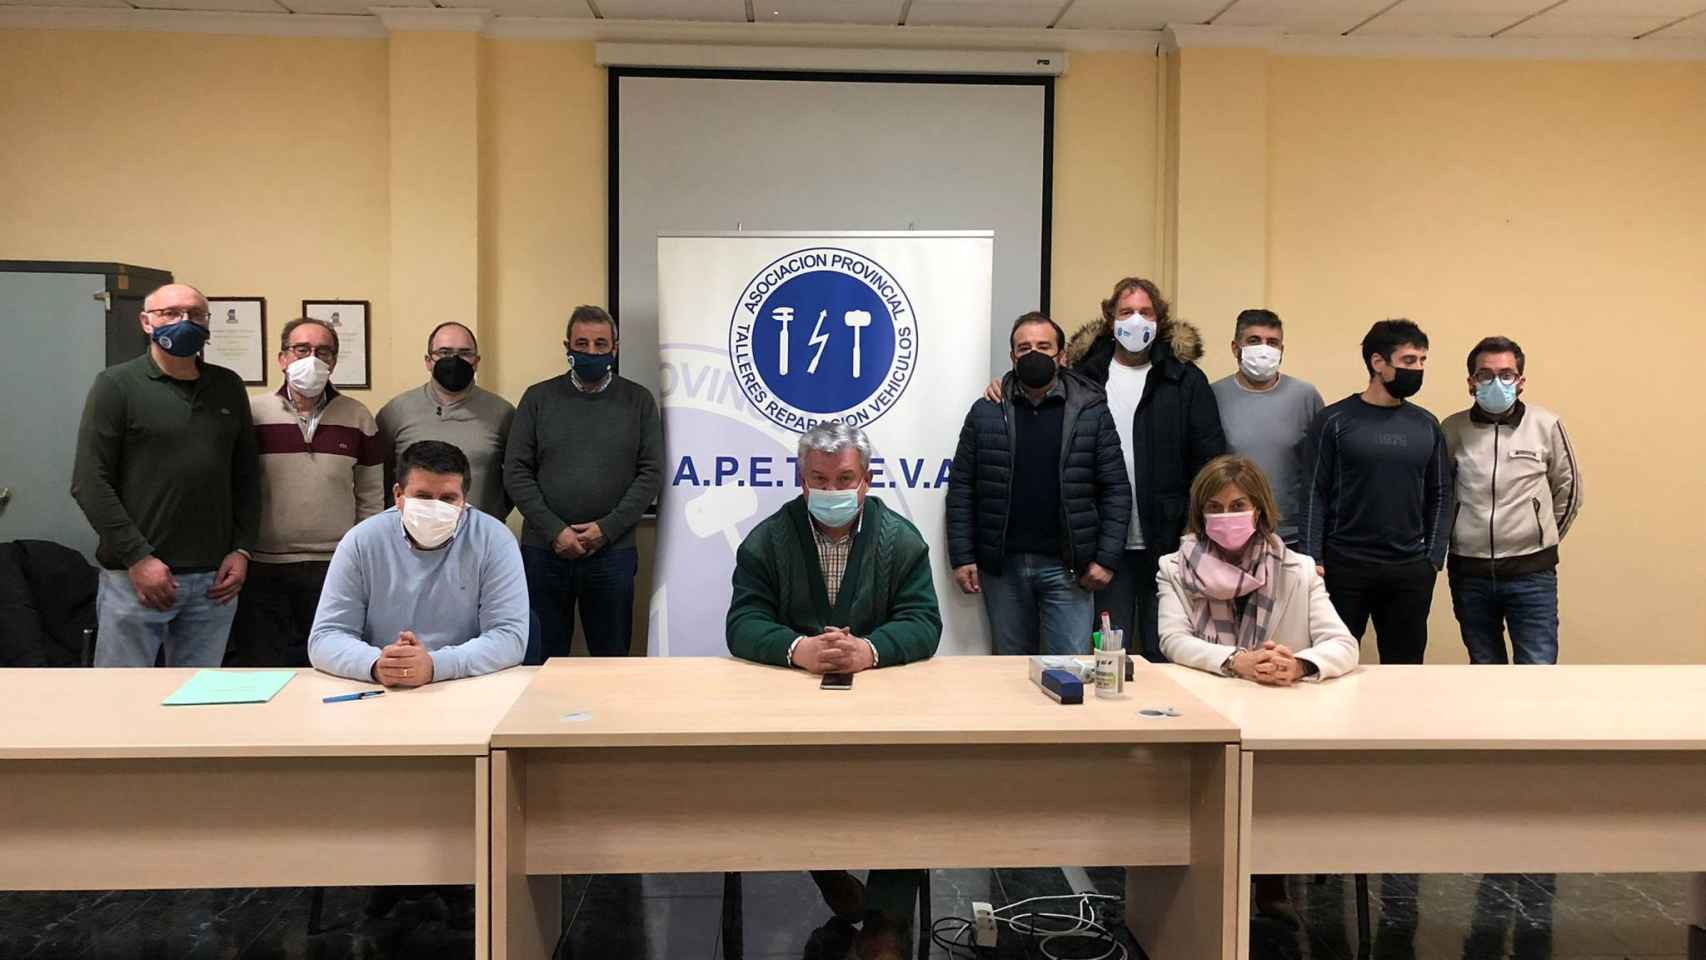 Firmado un convenio colectivo que afecta a más de mil trabajadores de Albacete